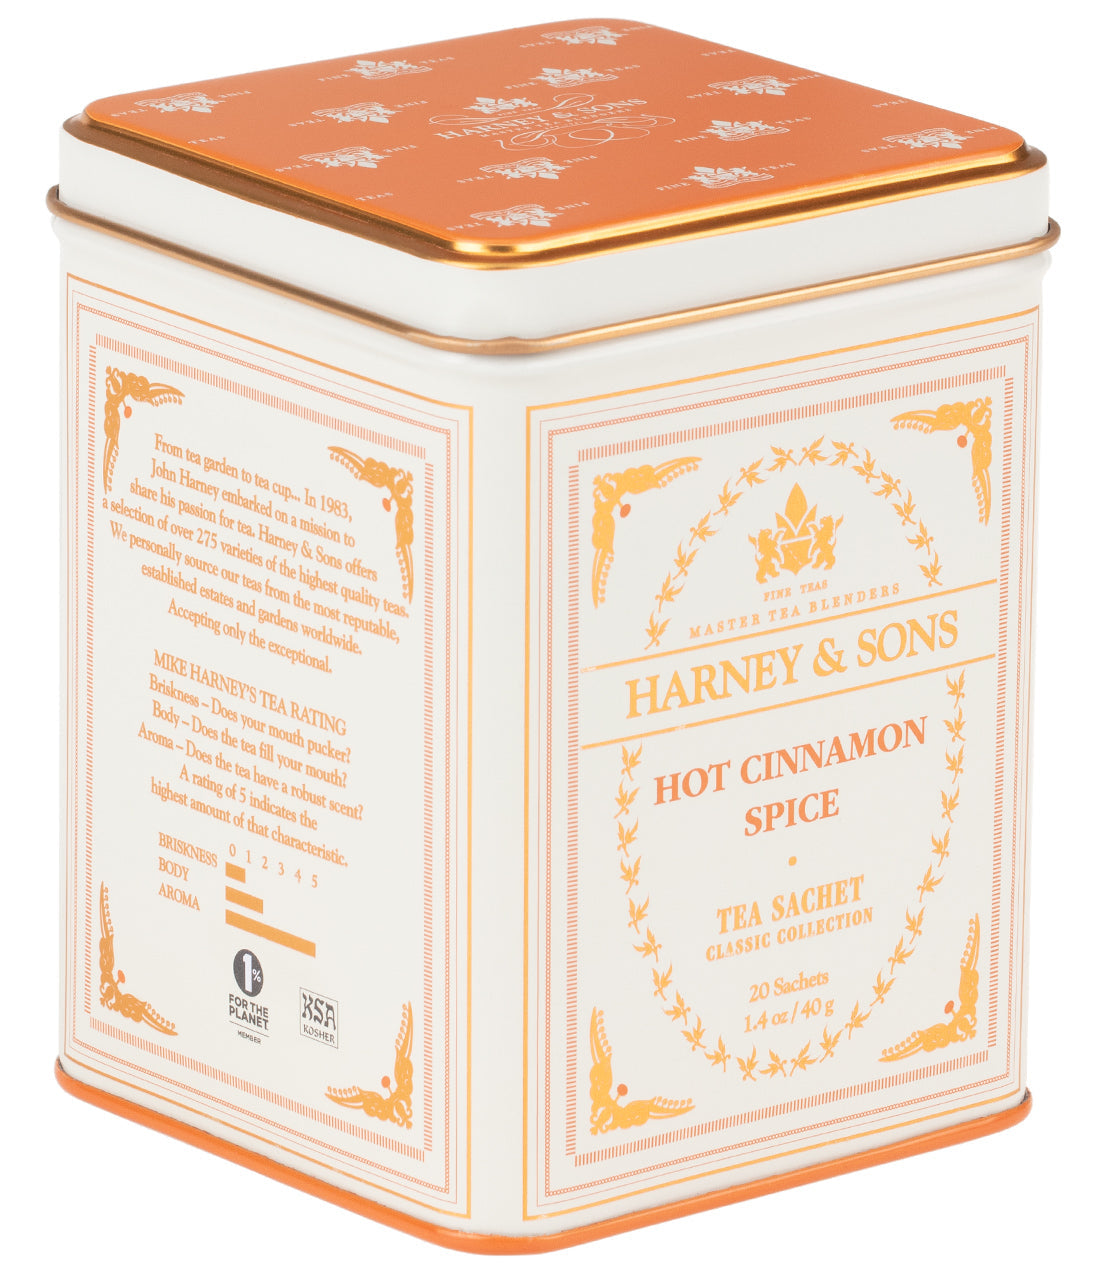 Hot Cinnamon Spice - Sachets Classic Tin of 20 Sachets - Harney & Sons Fine Teas